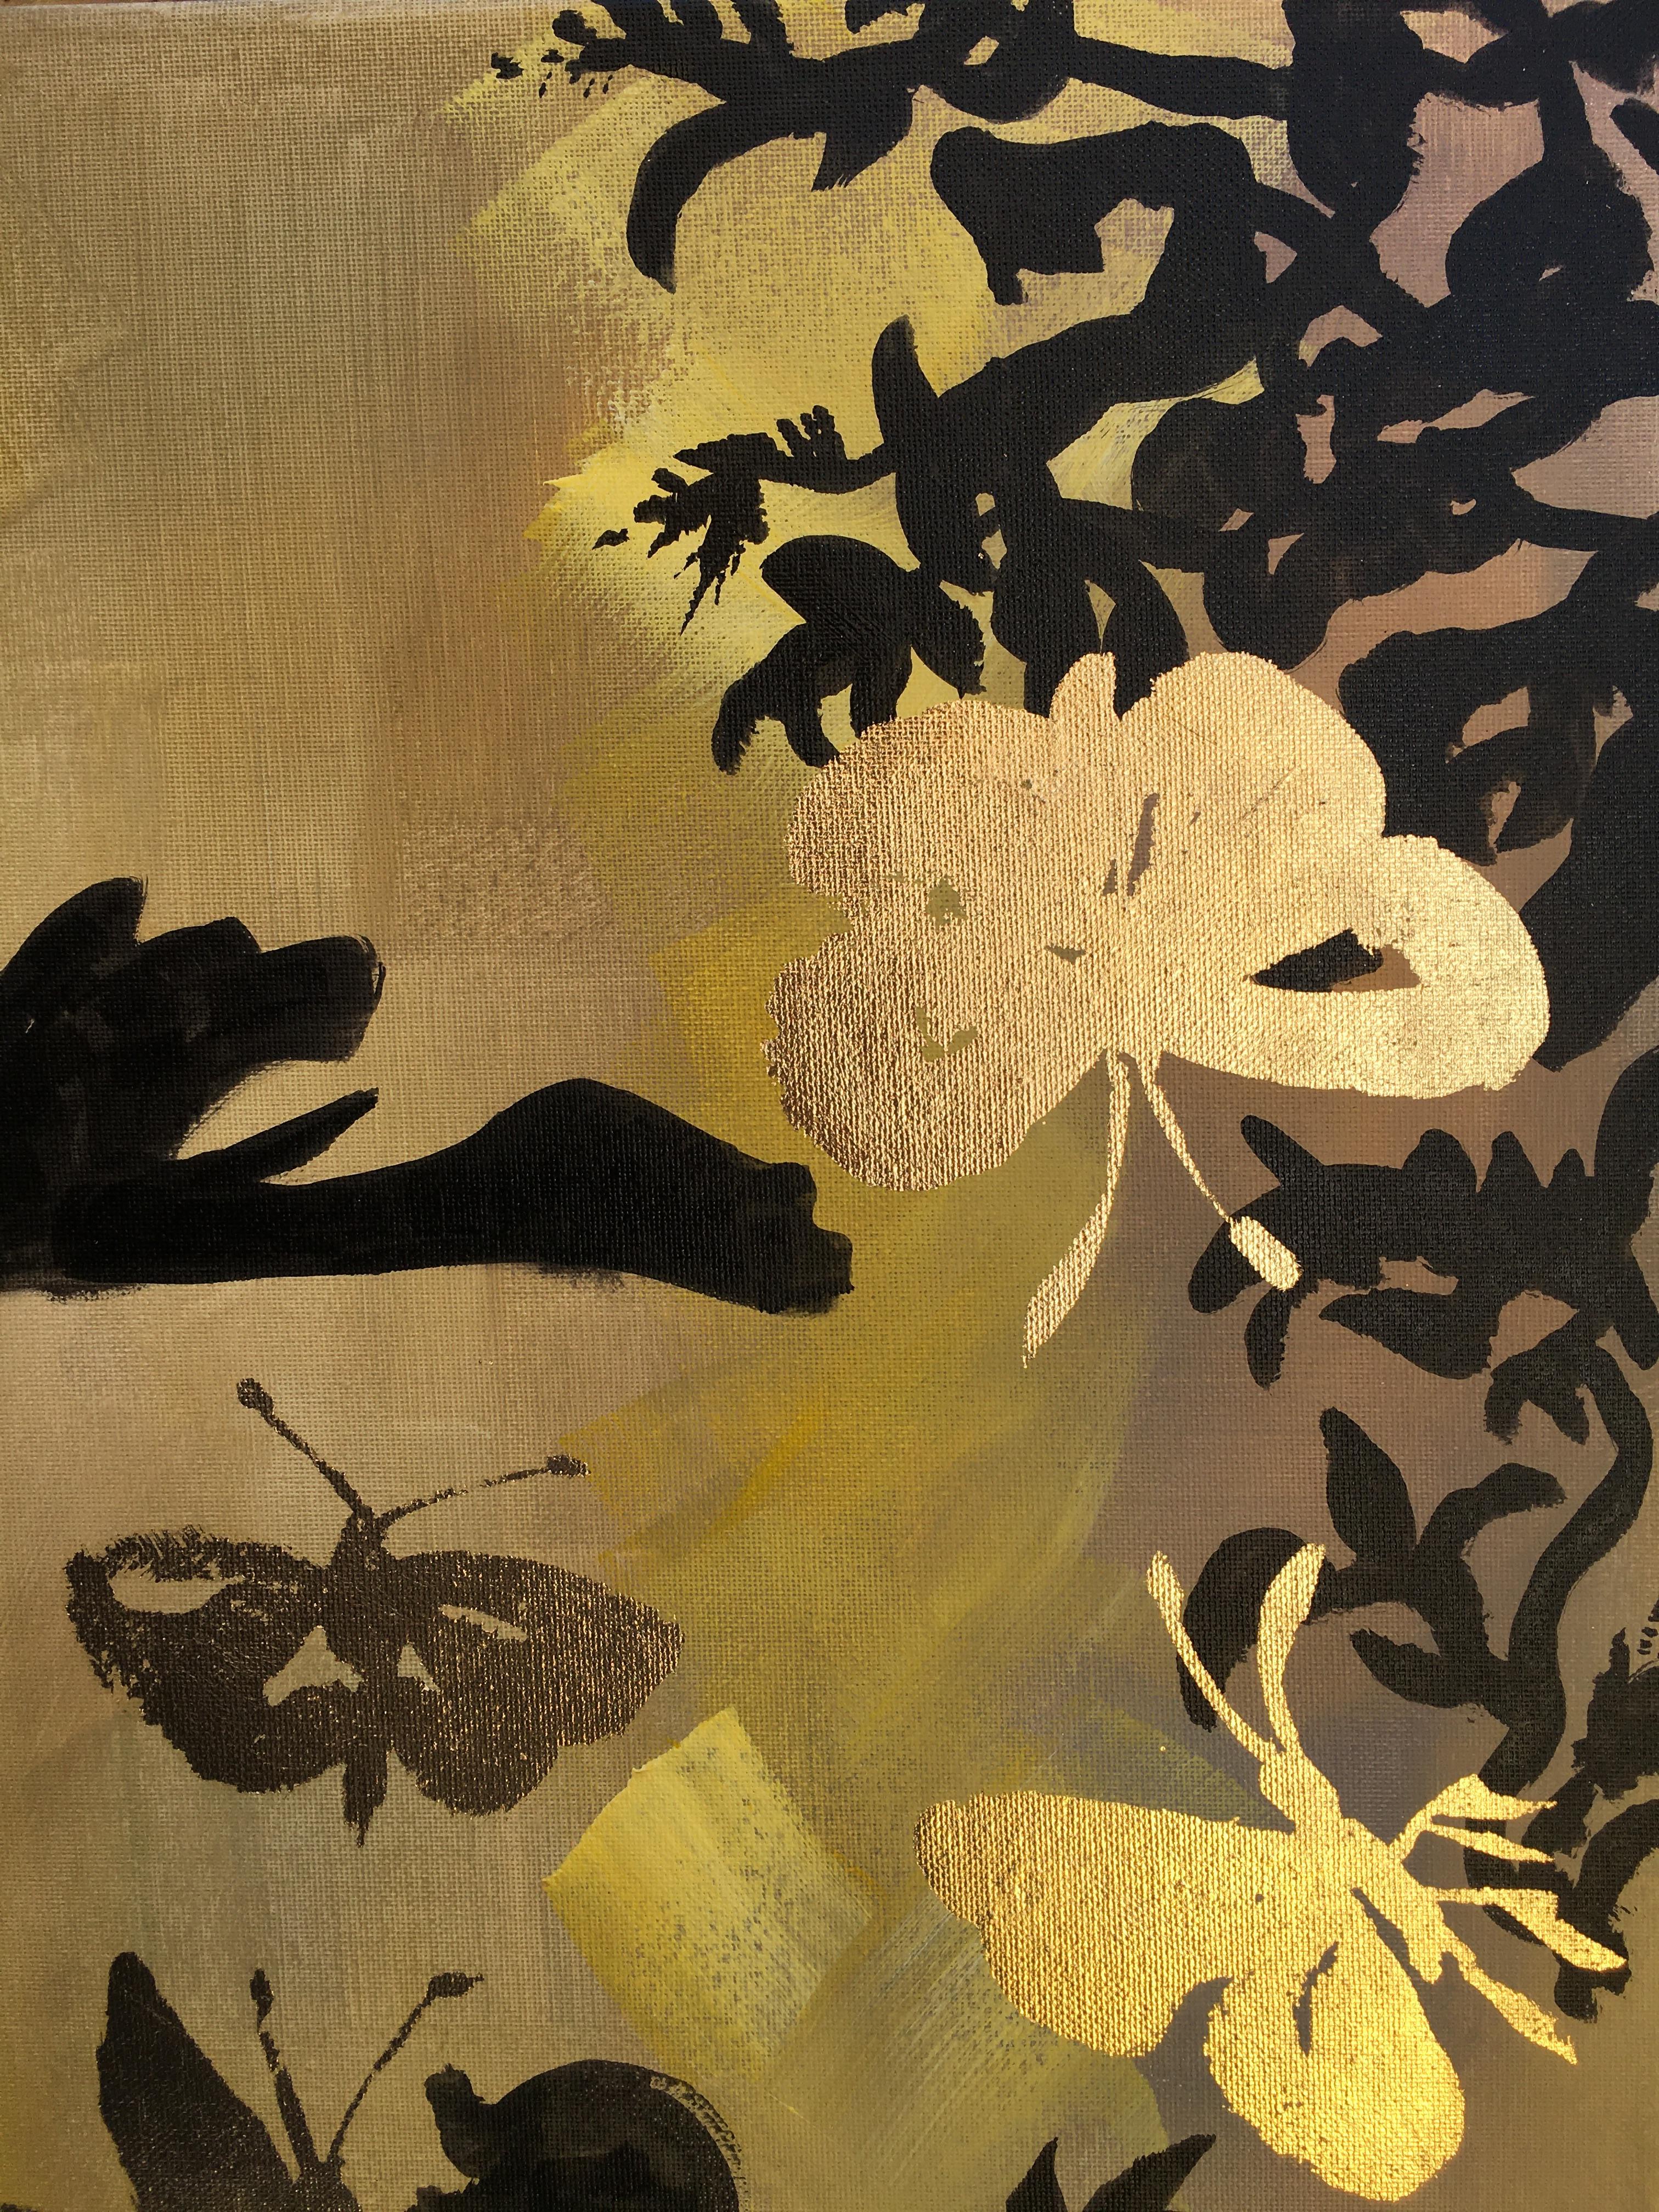 Original-Jay and Butterflies-Abstract-Expression-Goldblatt-UK ausgezeichneter Künstler 7